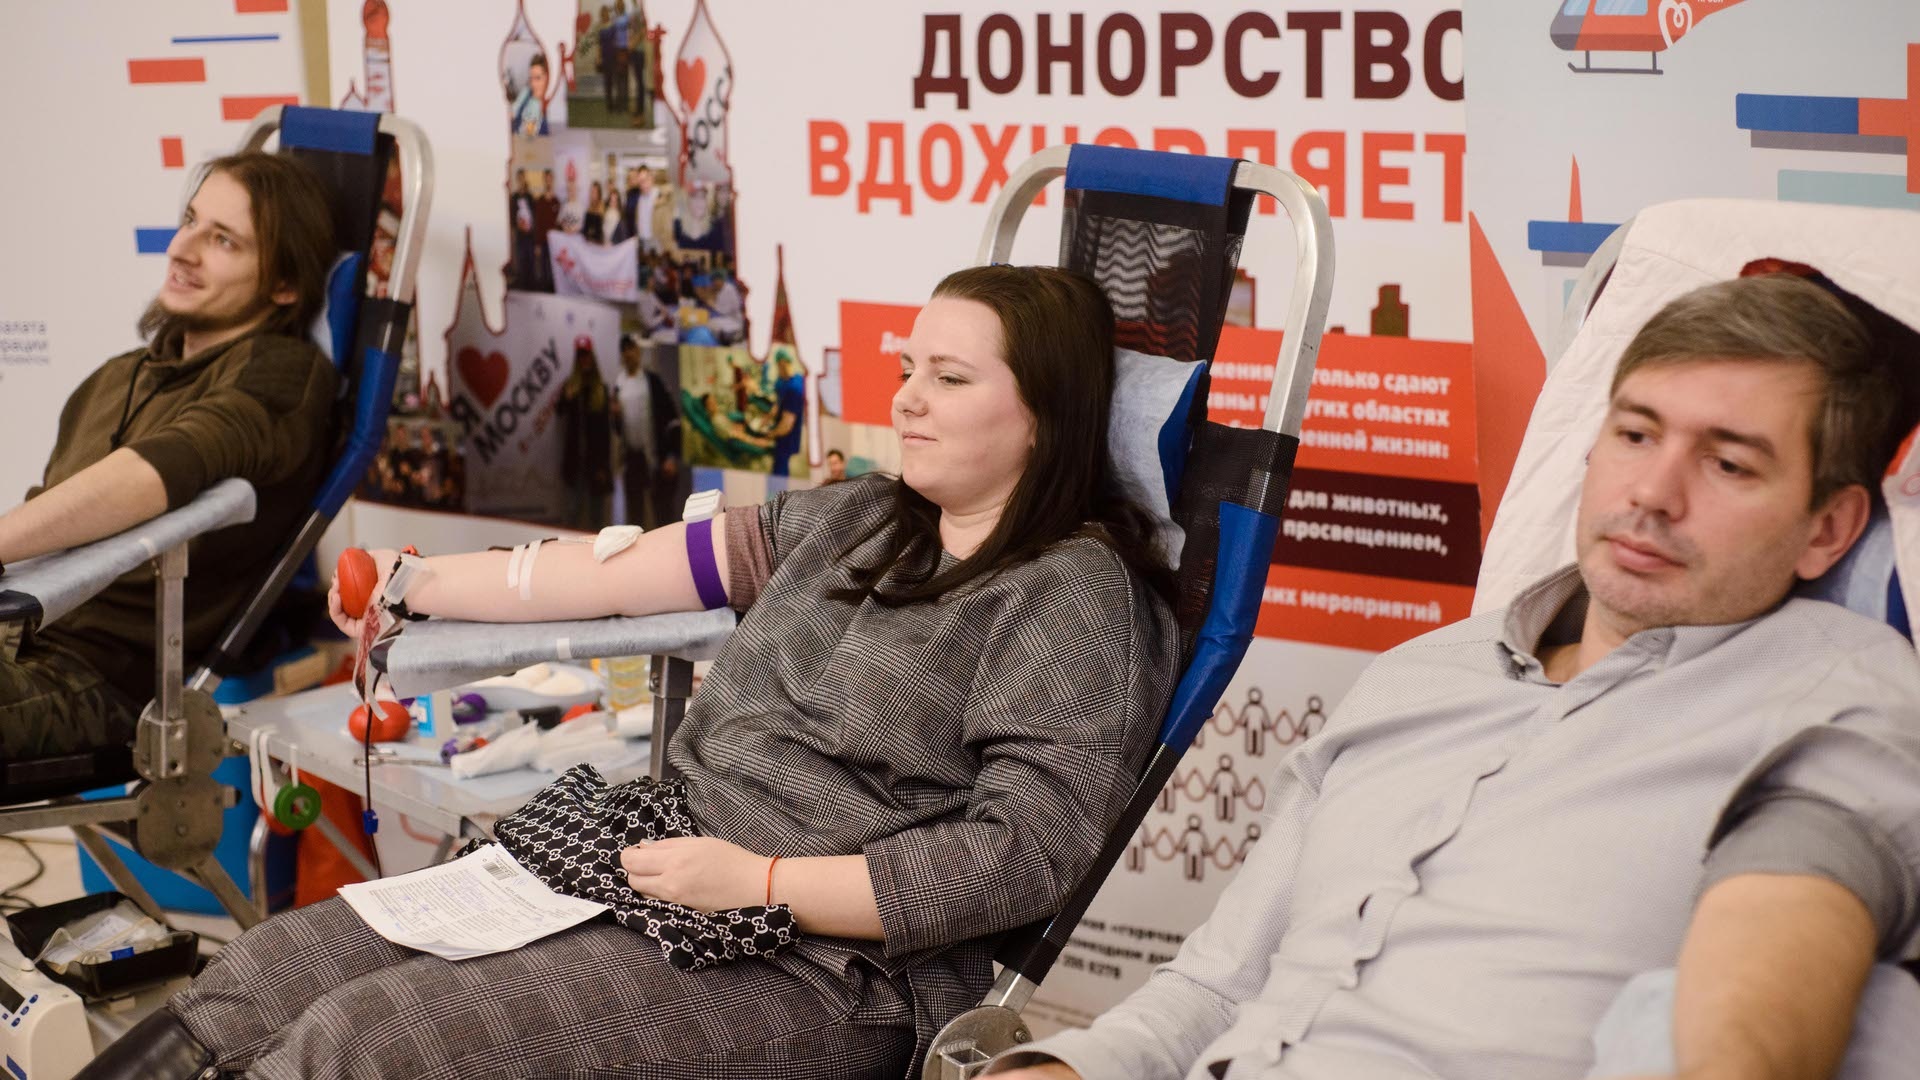 Сотрудники Управления по работе со студентами рассказали, как можно стать донором крови в современных условиях